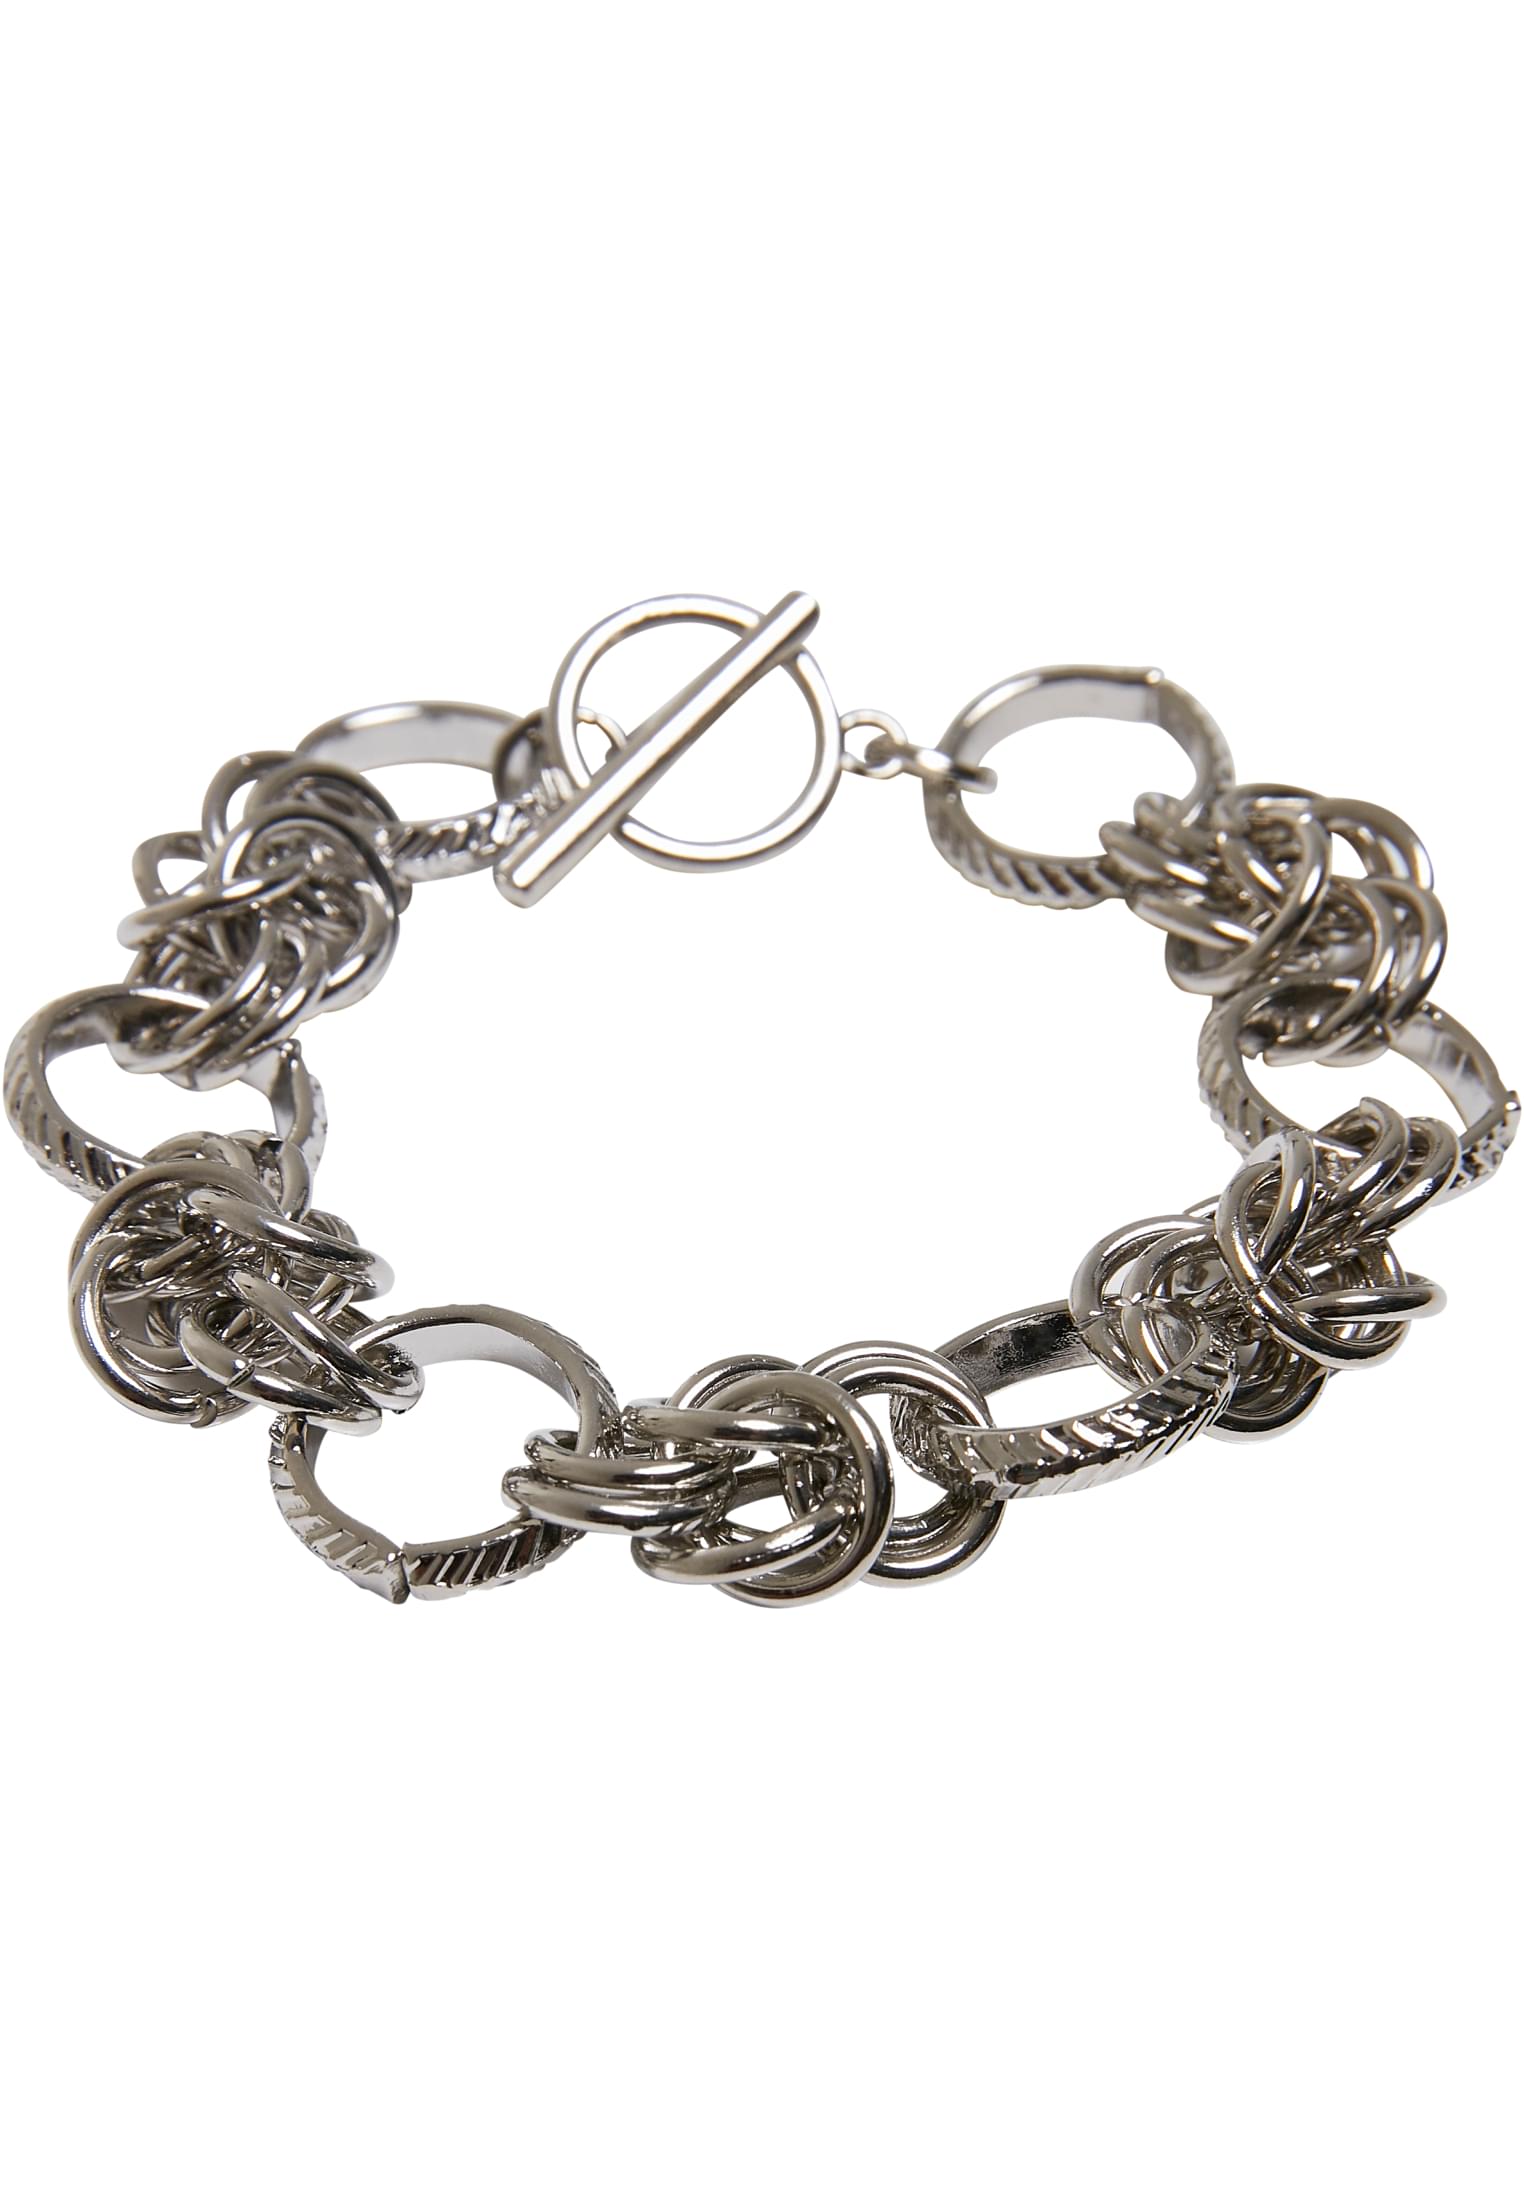 Multiring bracelet - silver color